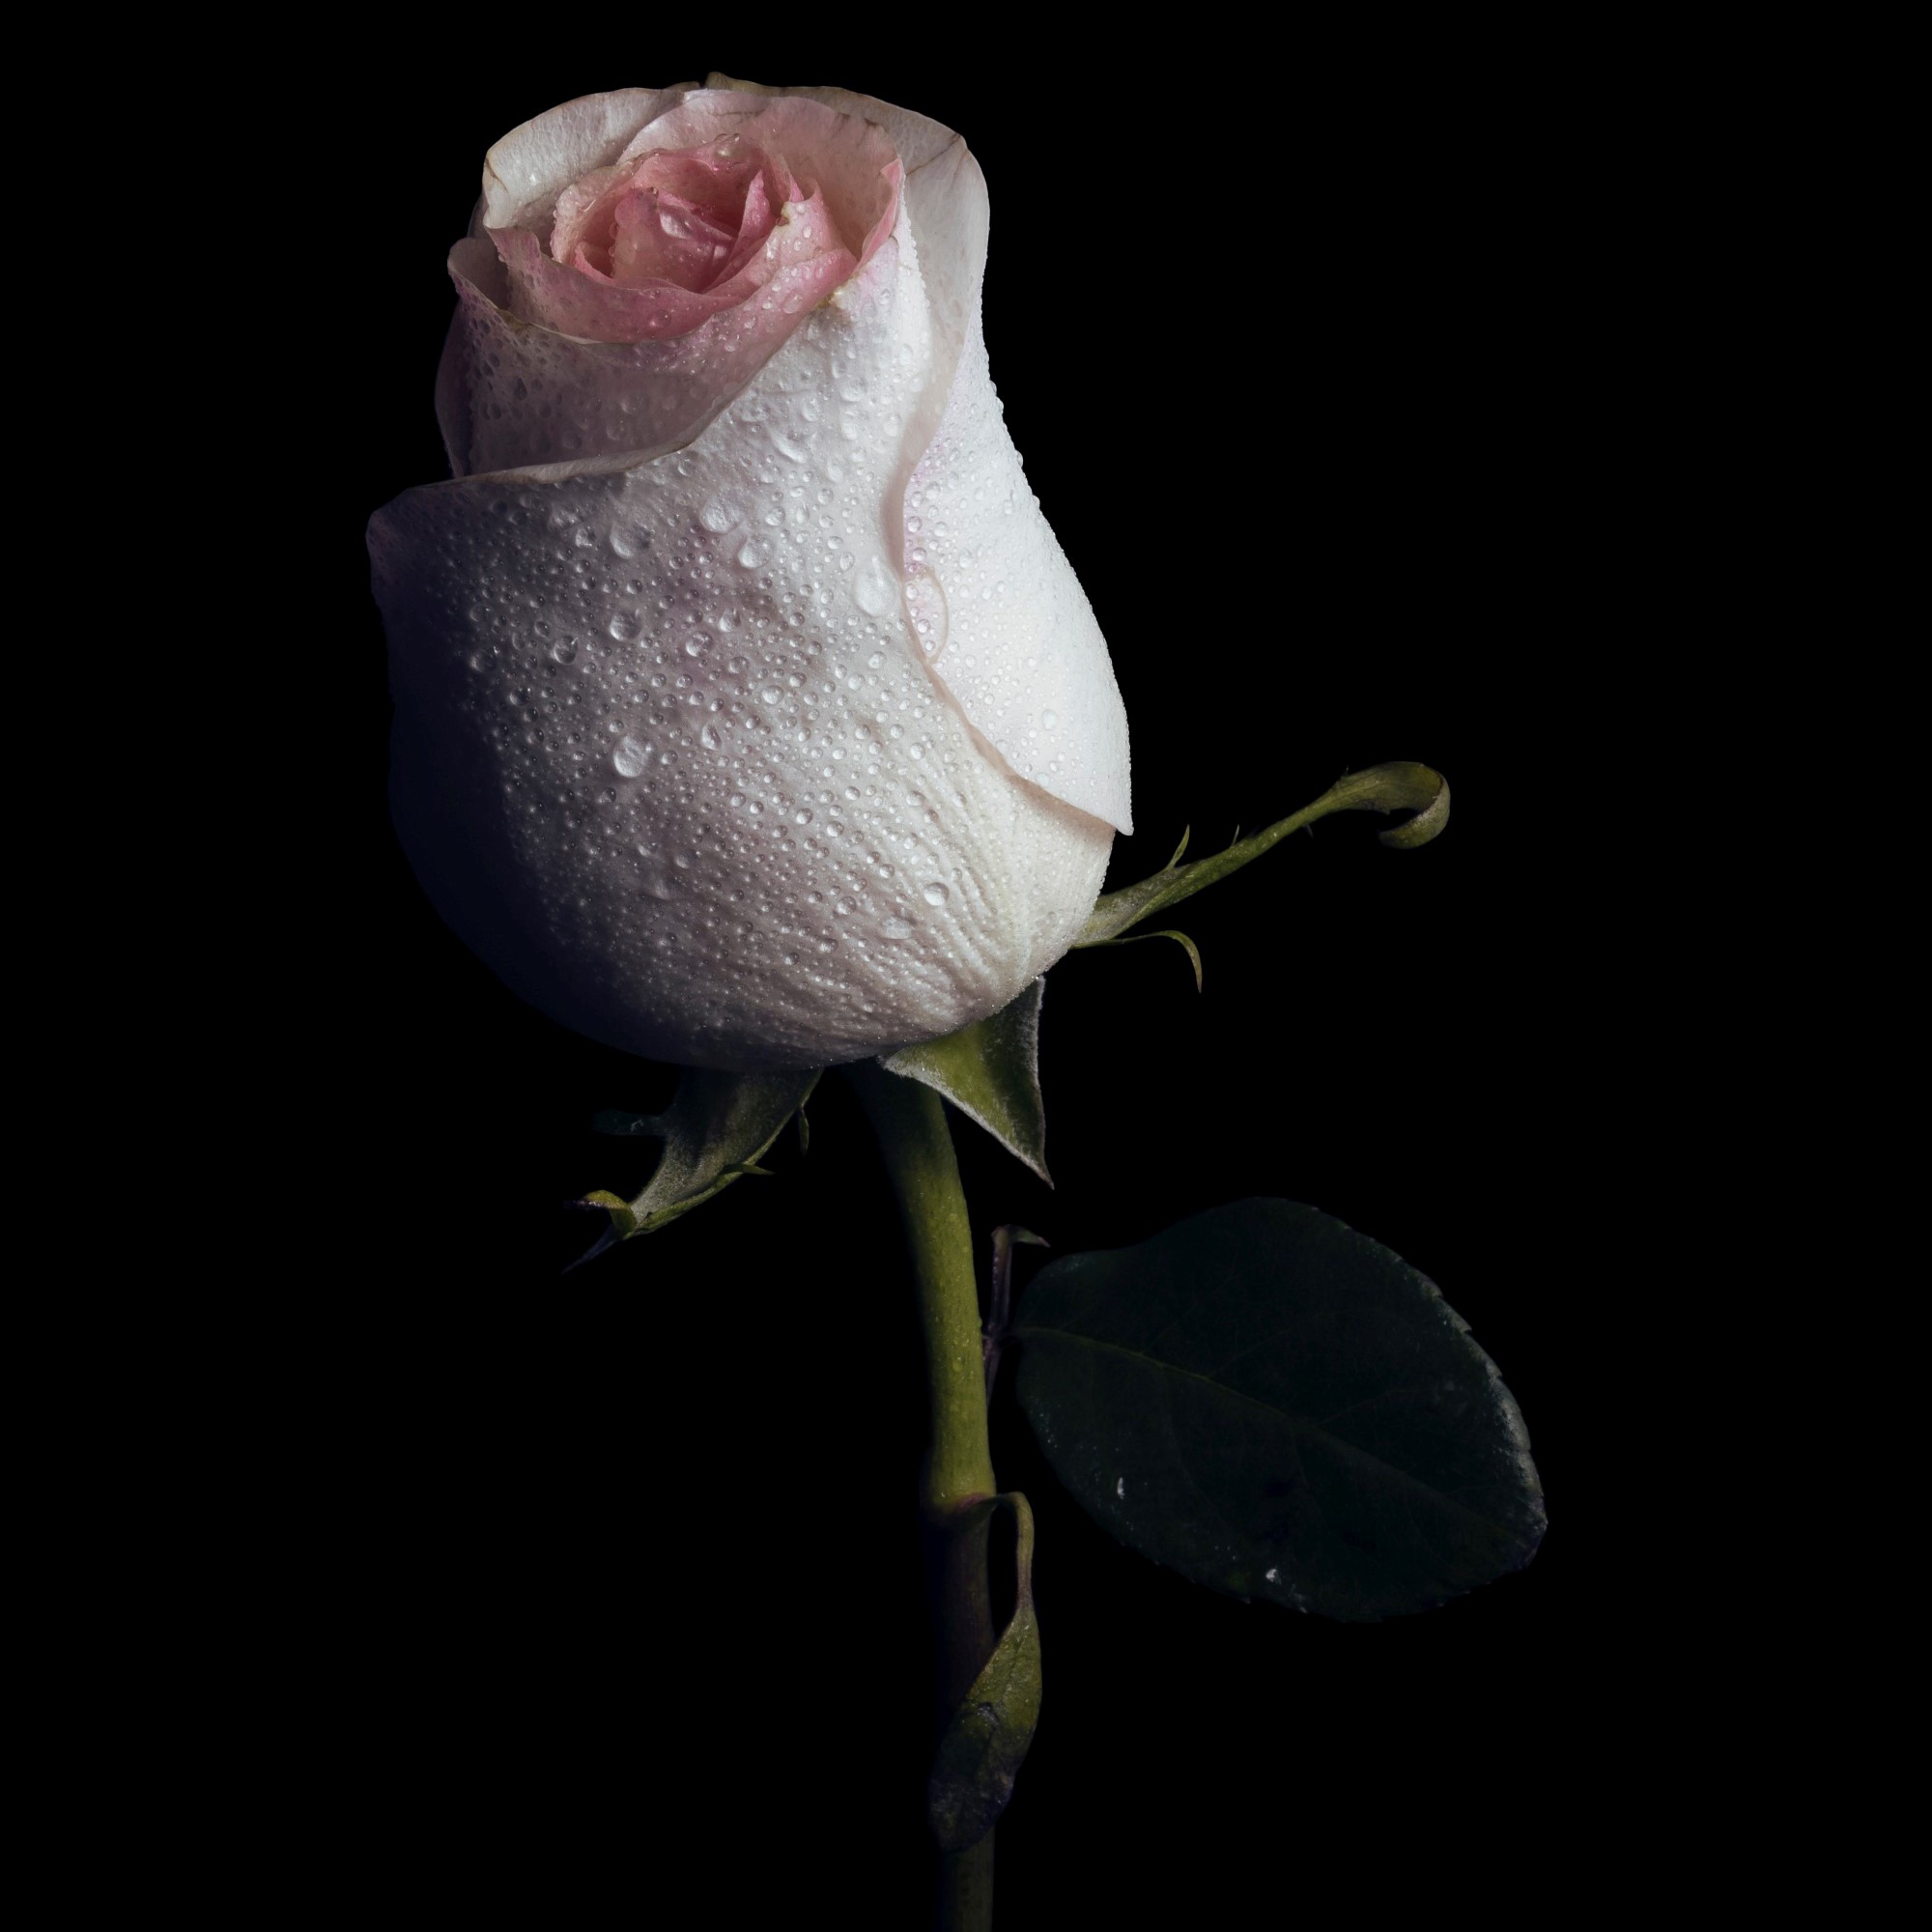 Hvit rose mot mørk bakgrunn